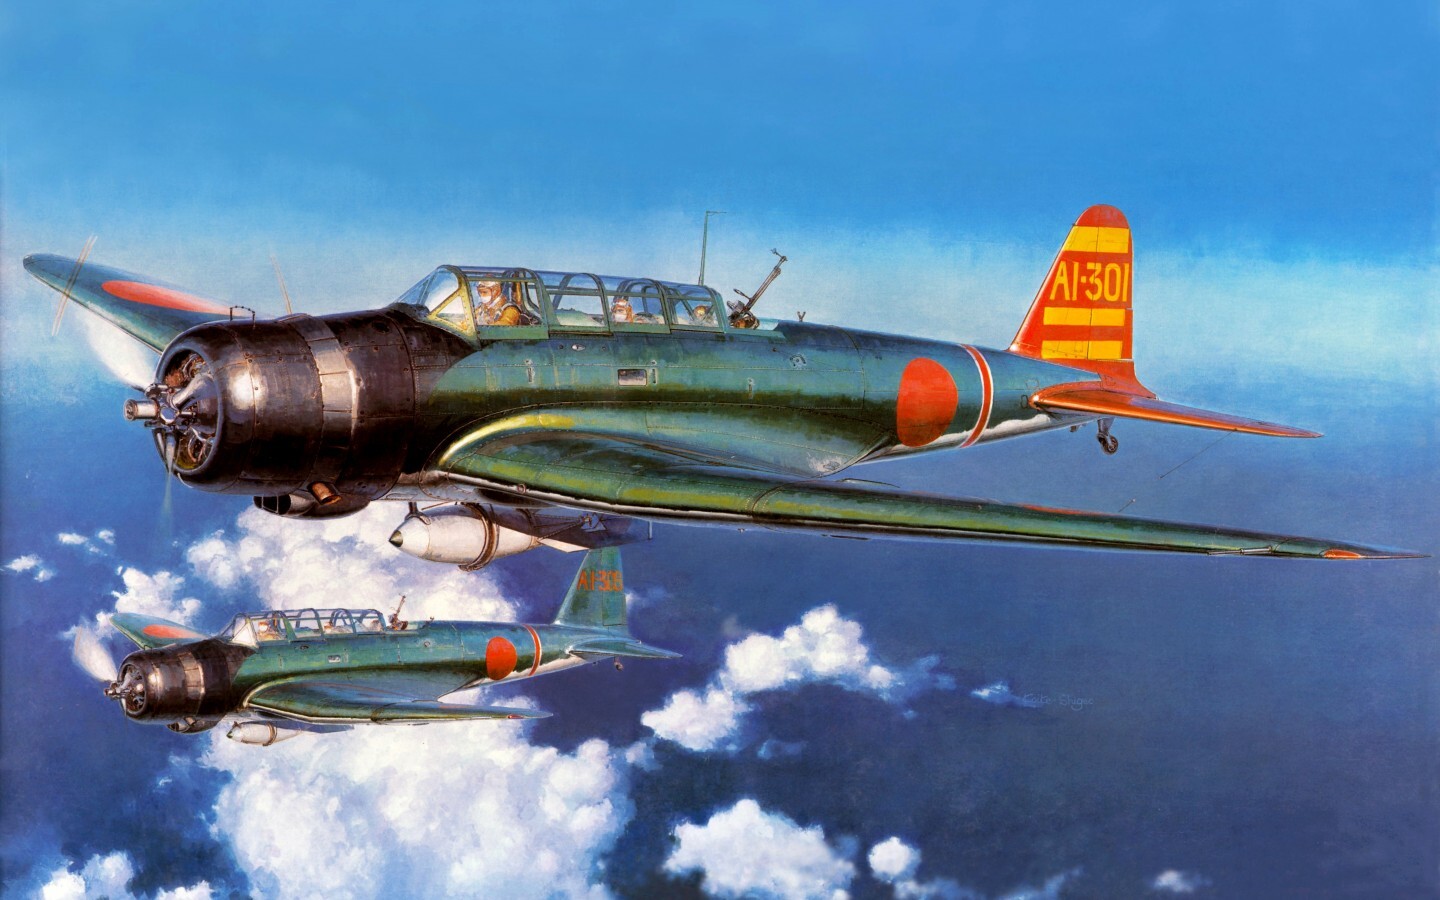 太平洋上空的海盗 二战经典倒鸥翼舰载战斗机